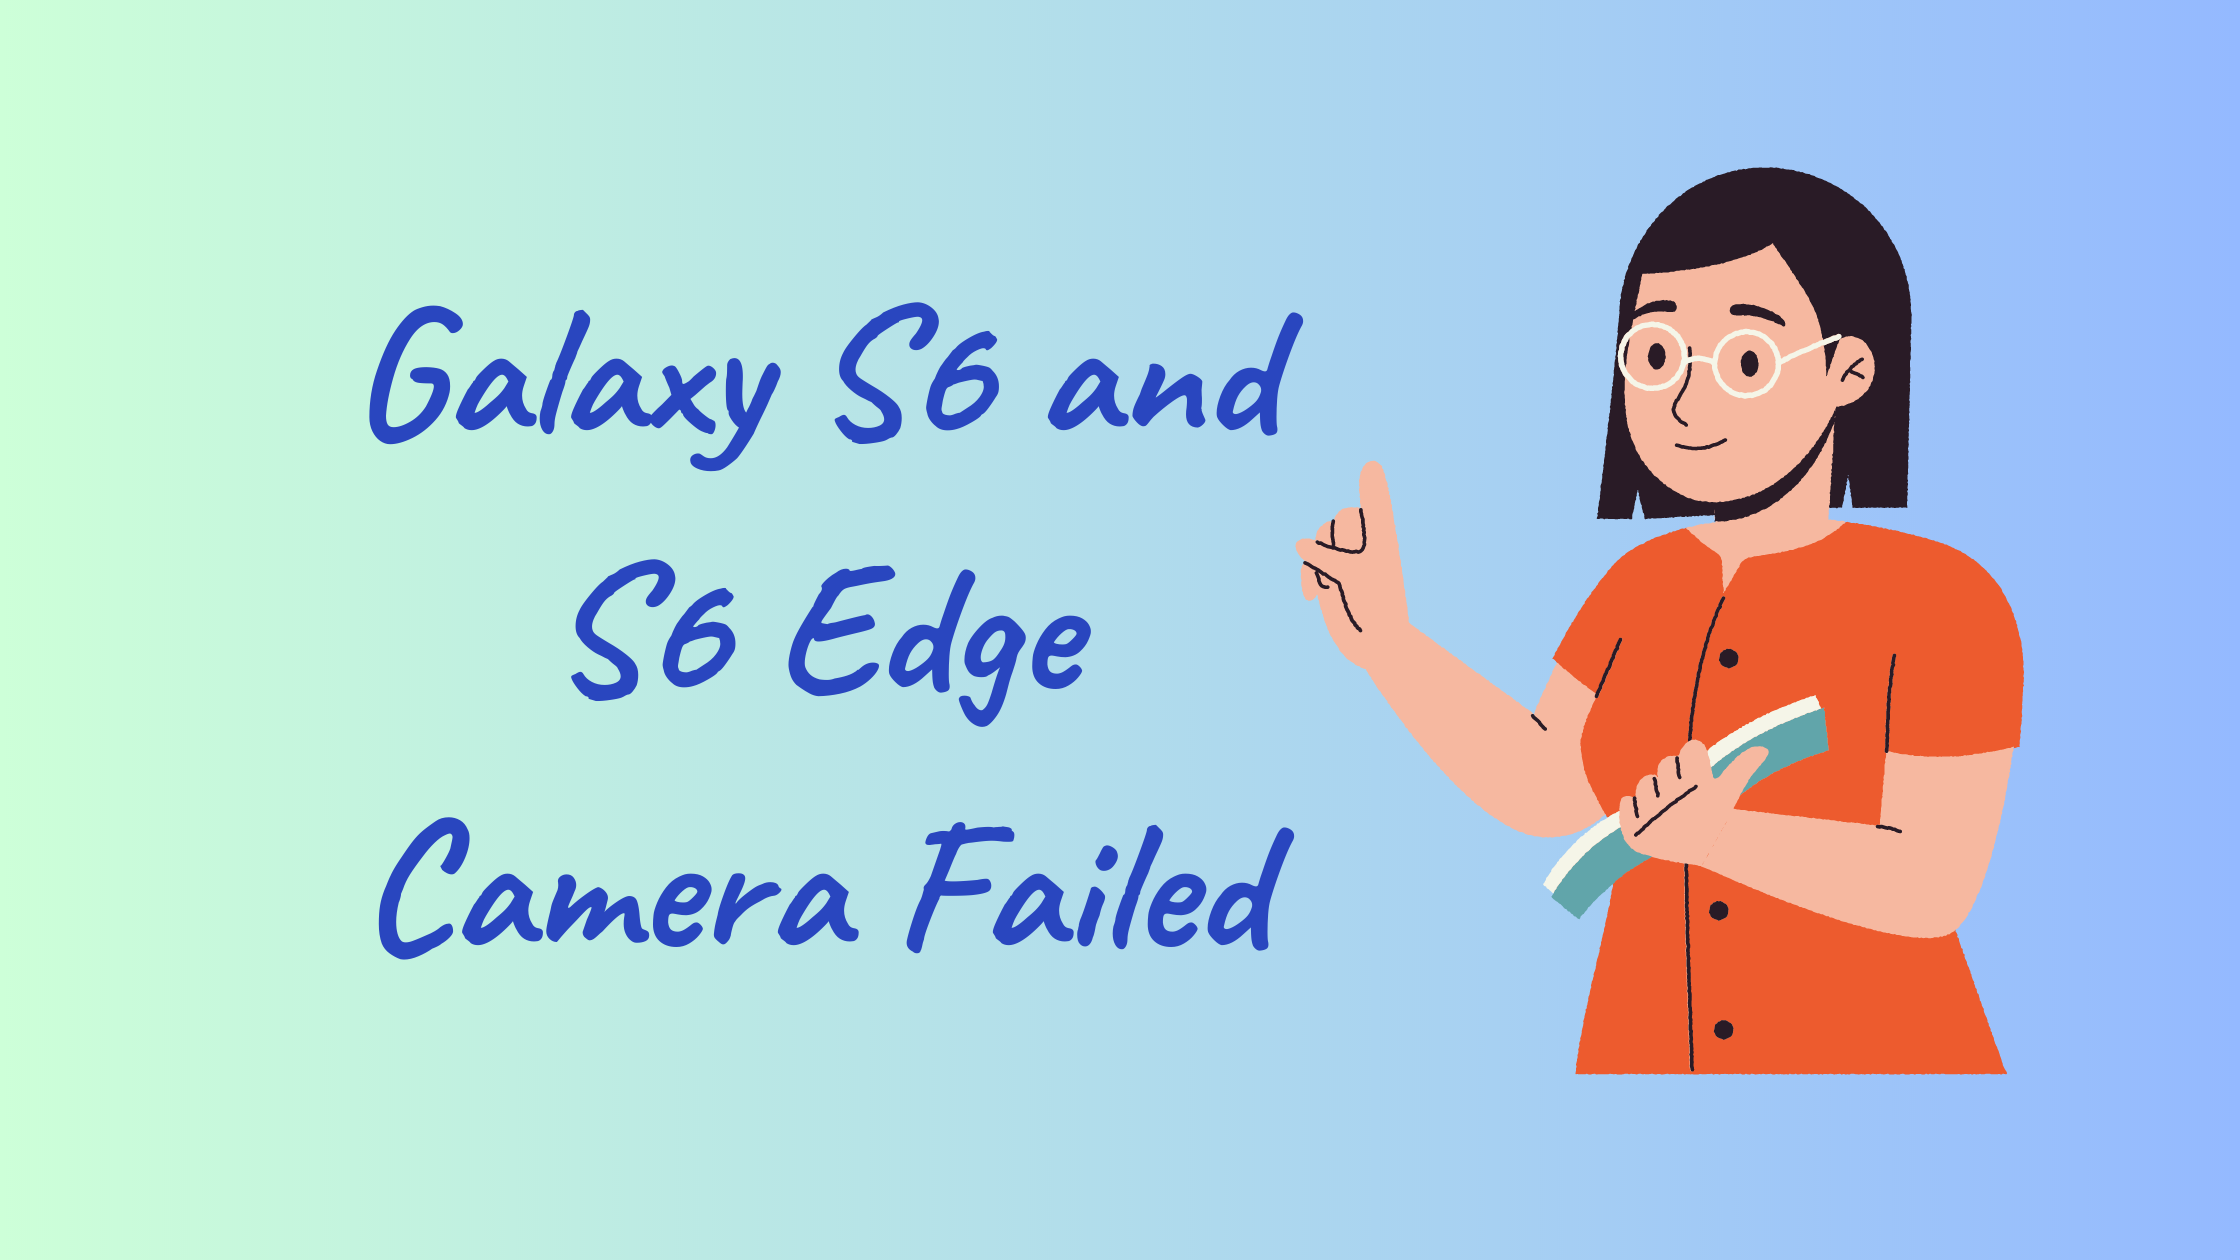 Galaxy S6 and S6 Edge Camera Failed